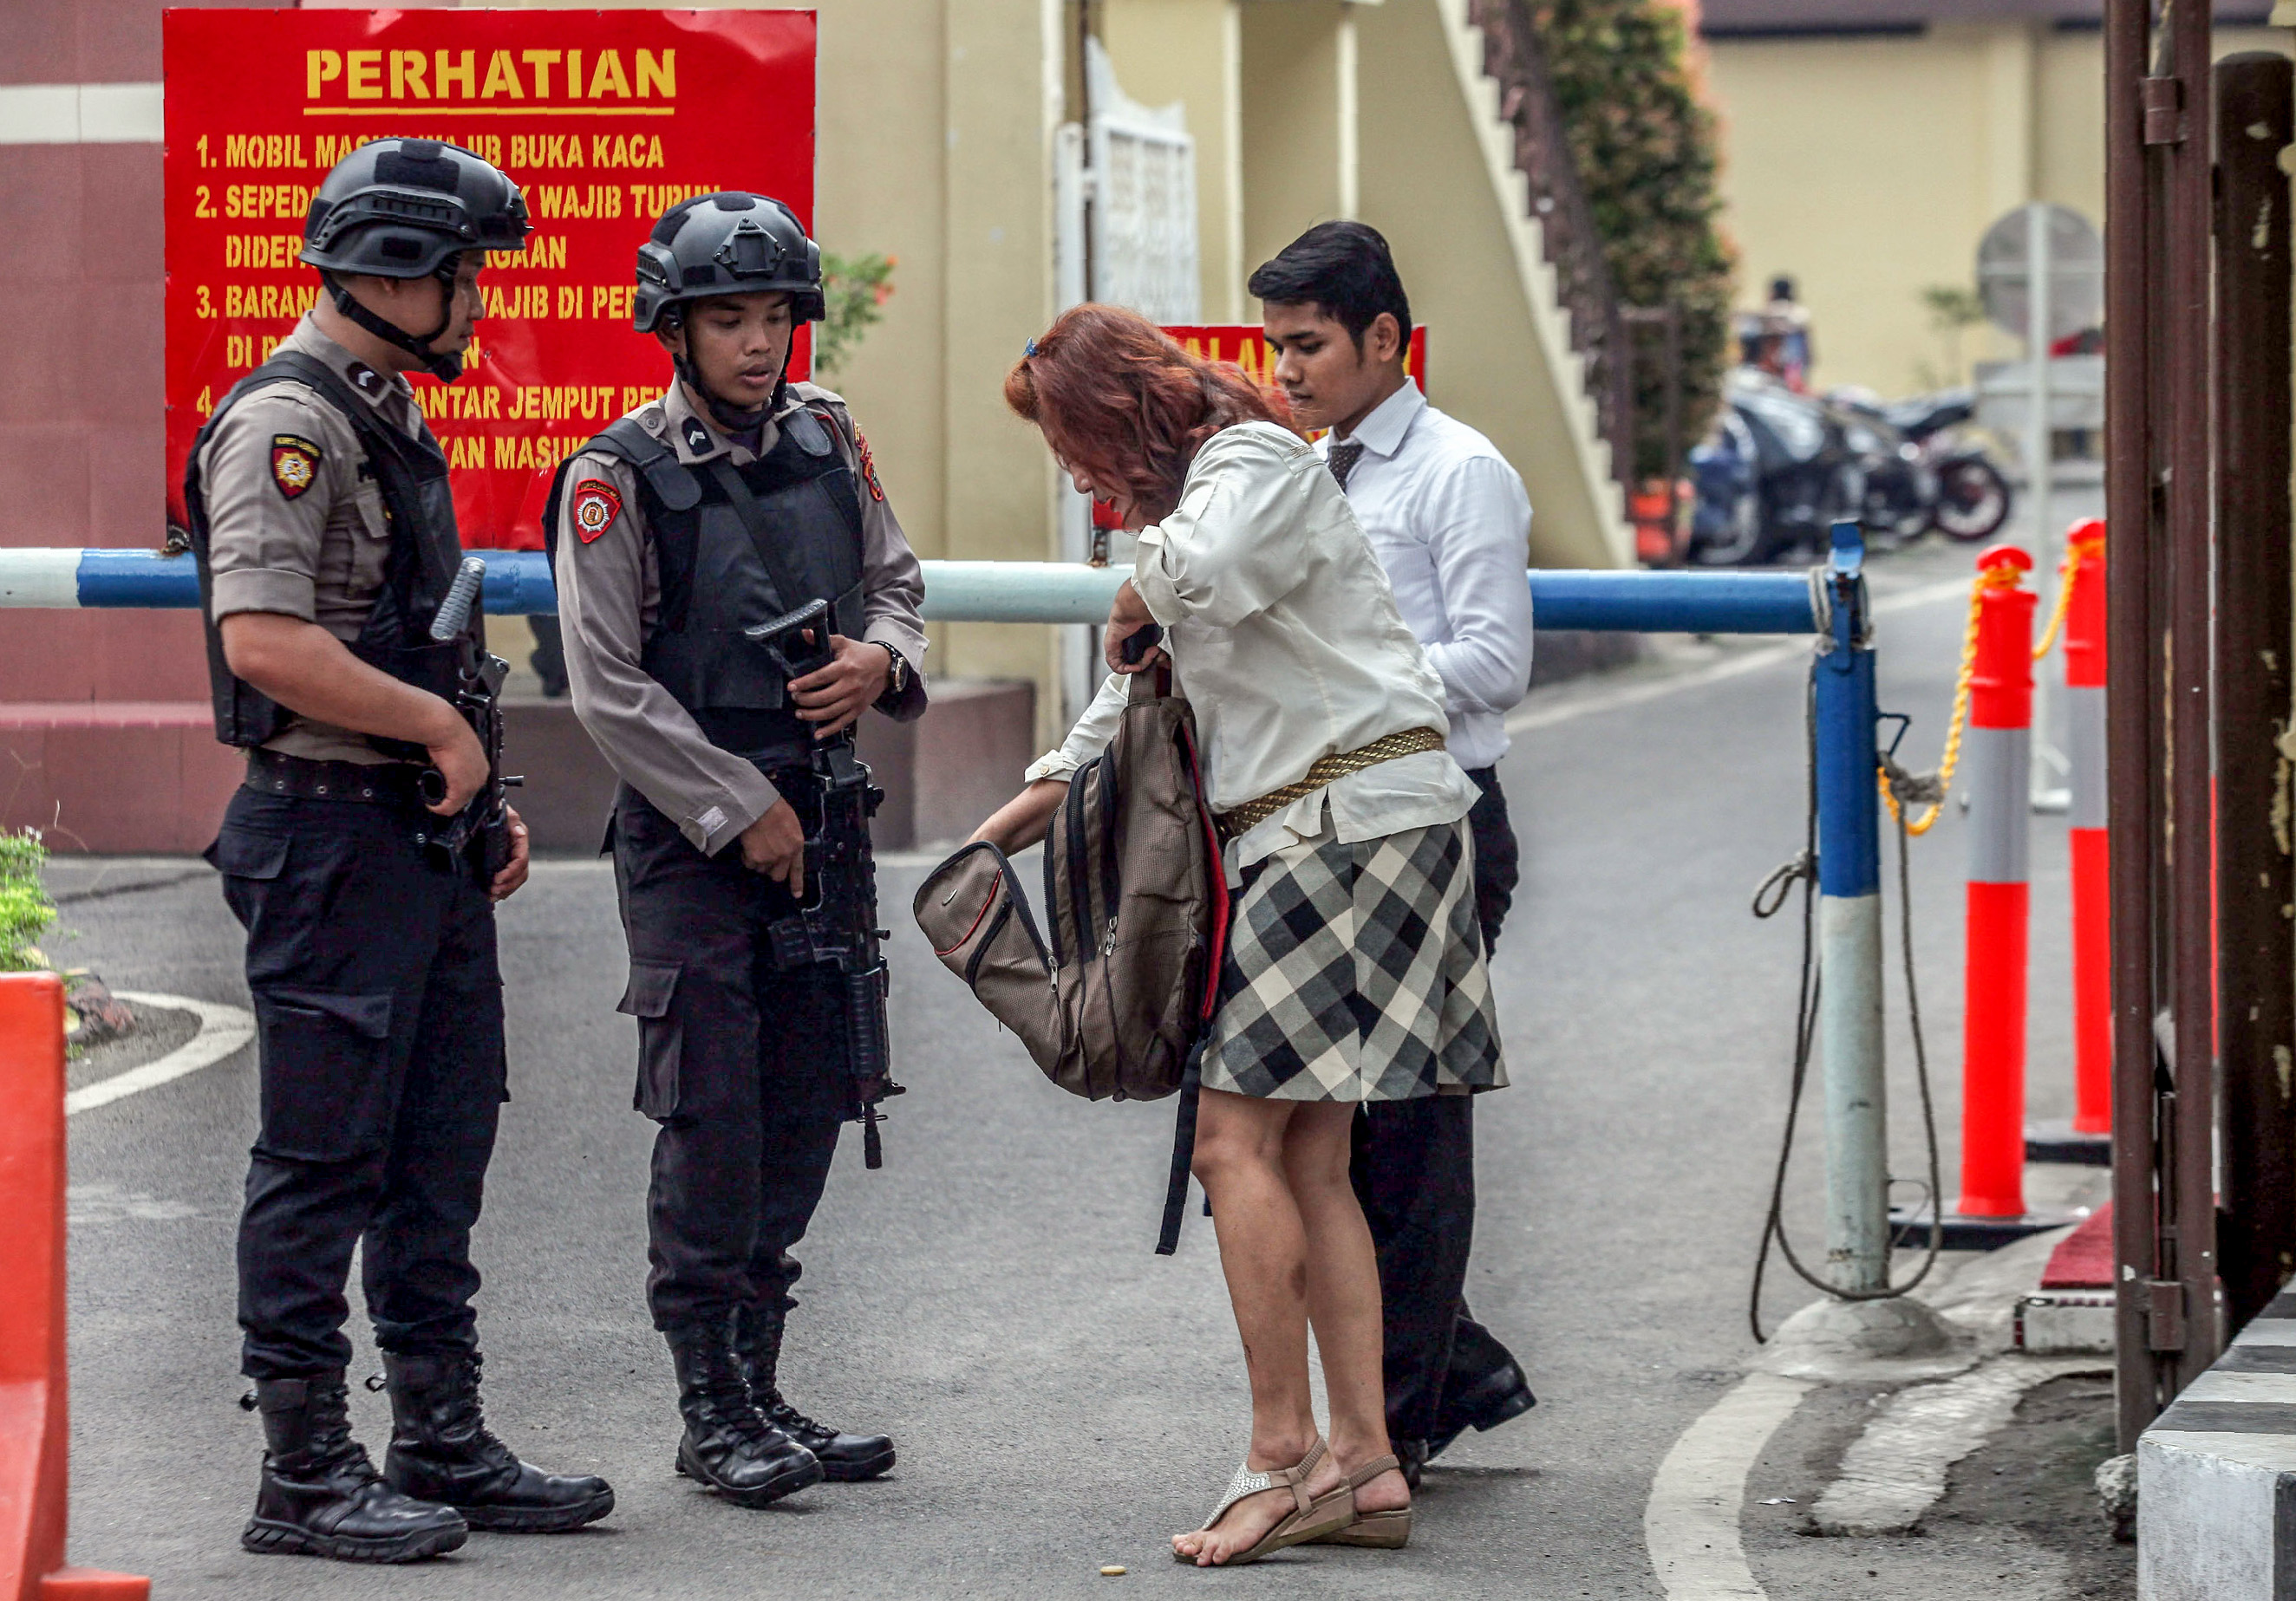 صور حملة أمنية مكثفة للشرطة الإندونيسية لضبط إرهابيين (6)